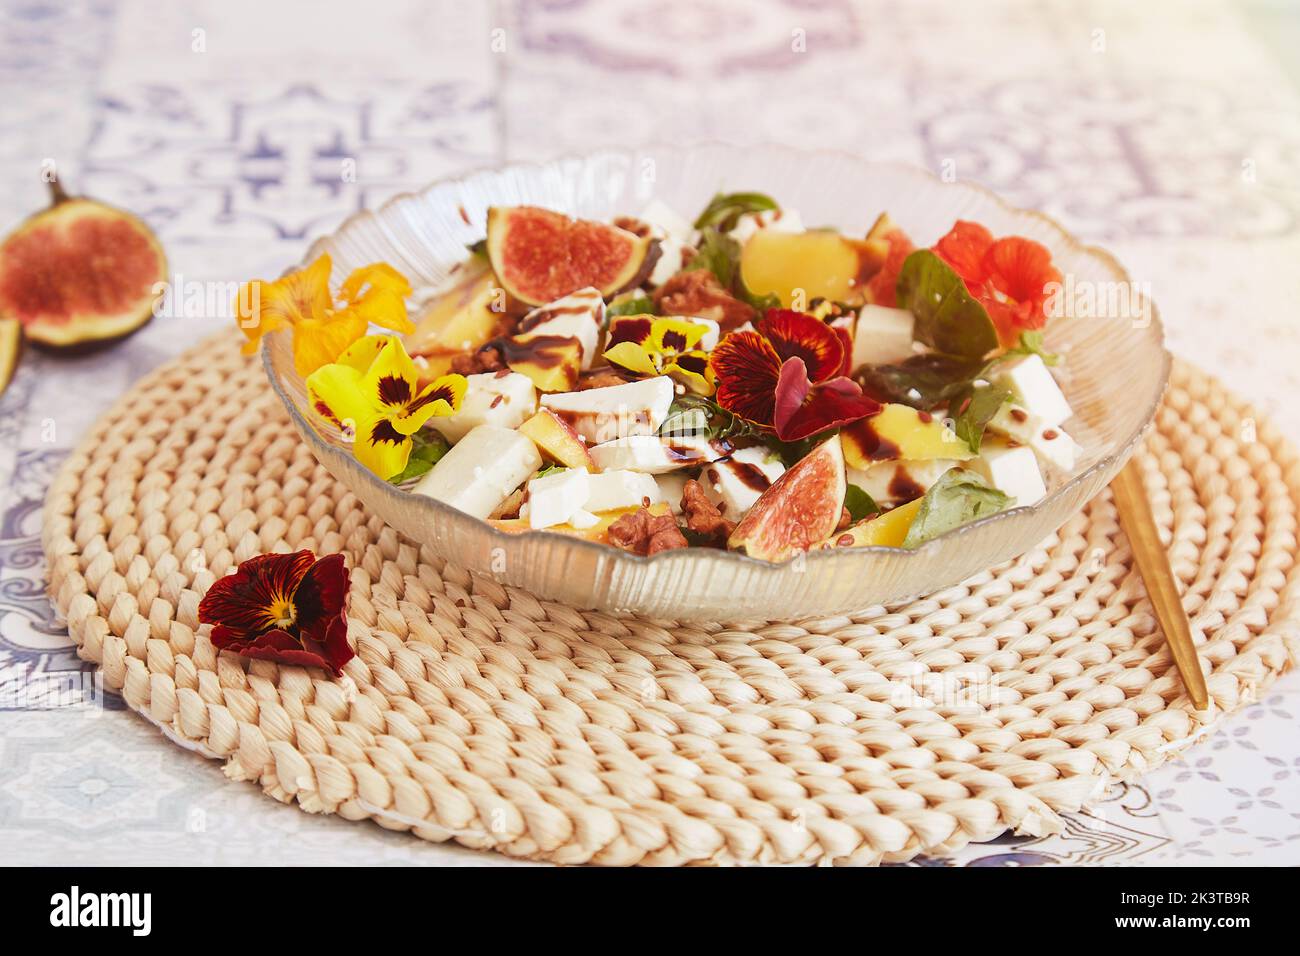 Salade française végétarienne avec féta de mangue, fleurs comestibles, figues, pêche, basilic sur fond de carreaux de céramique. Une alimentation saine. Banque D'Images